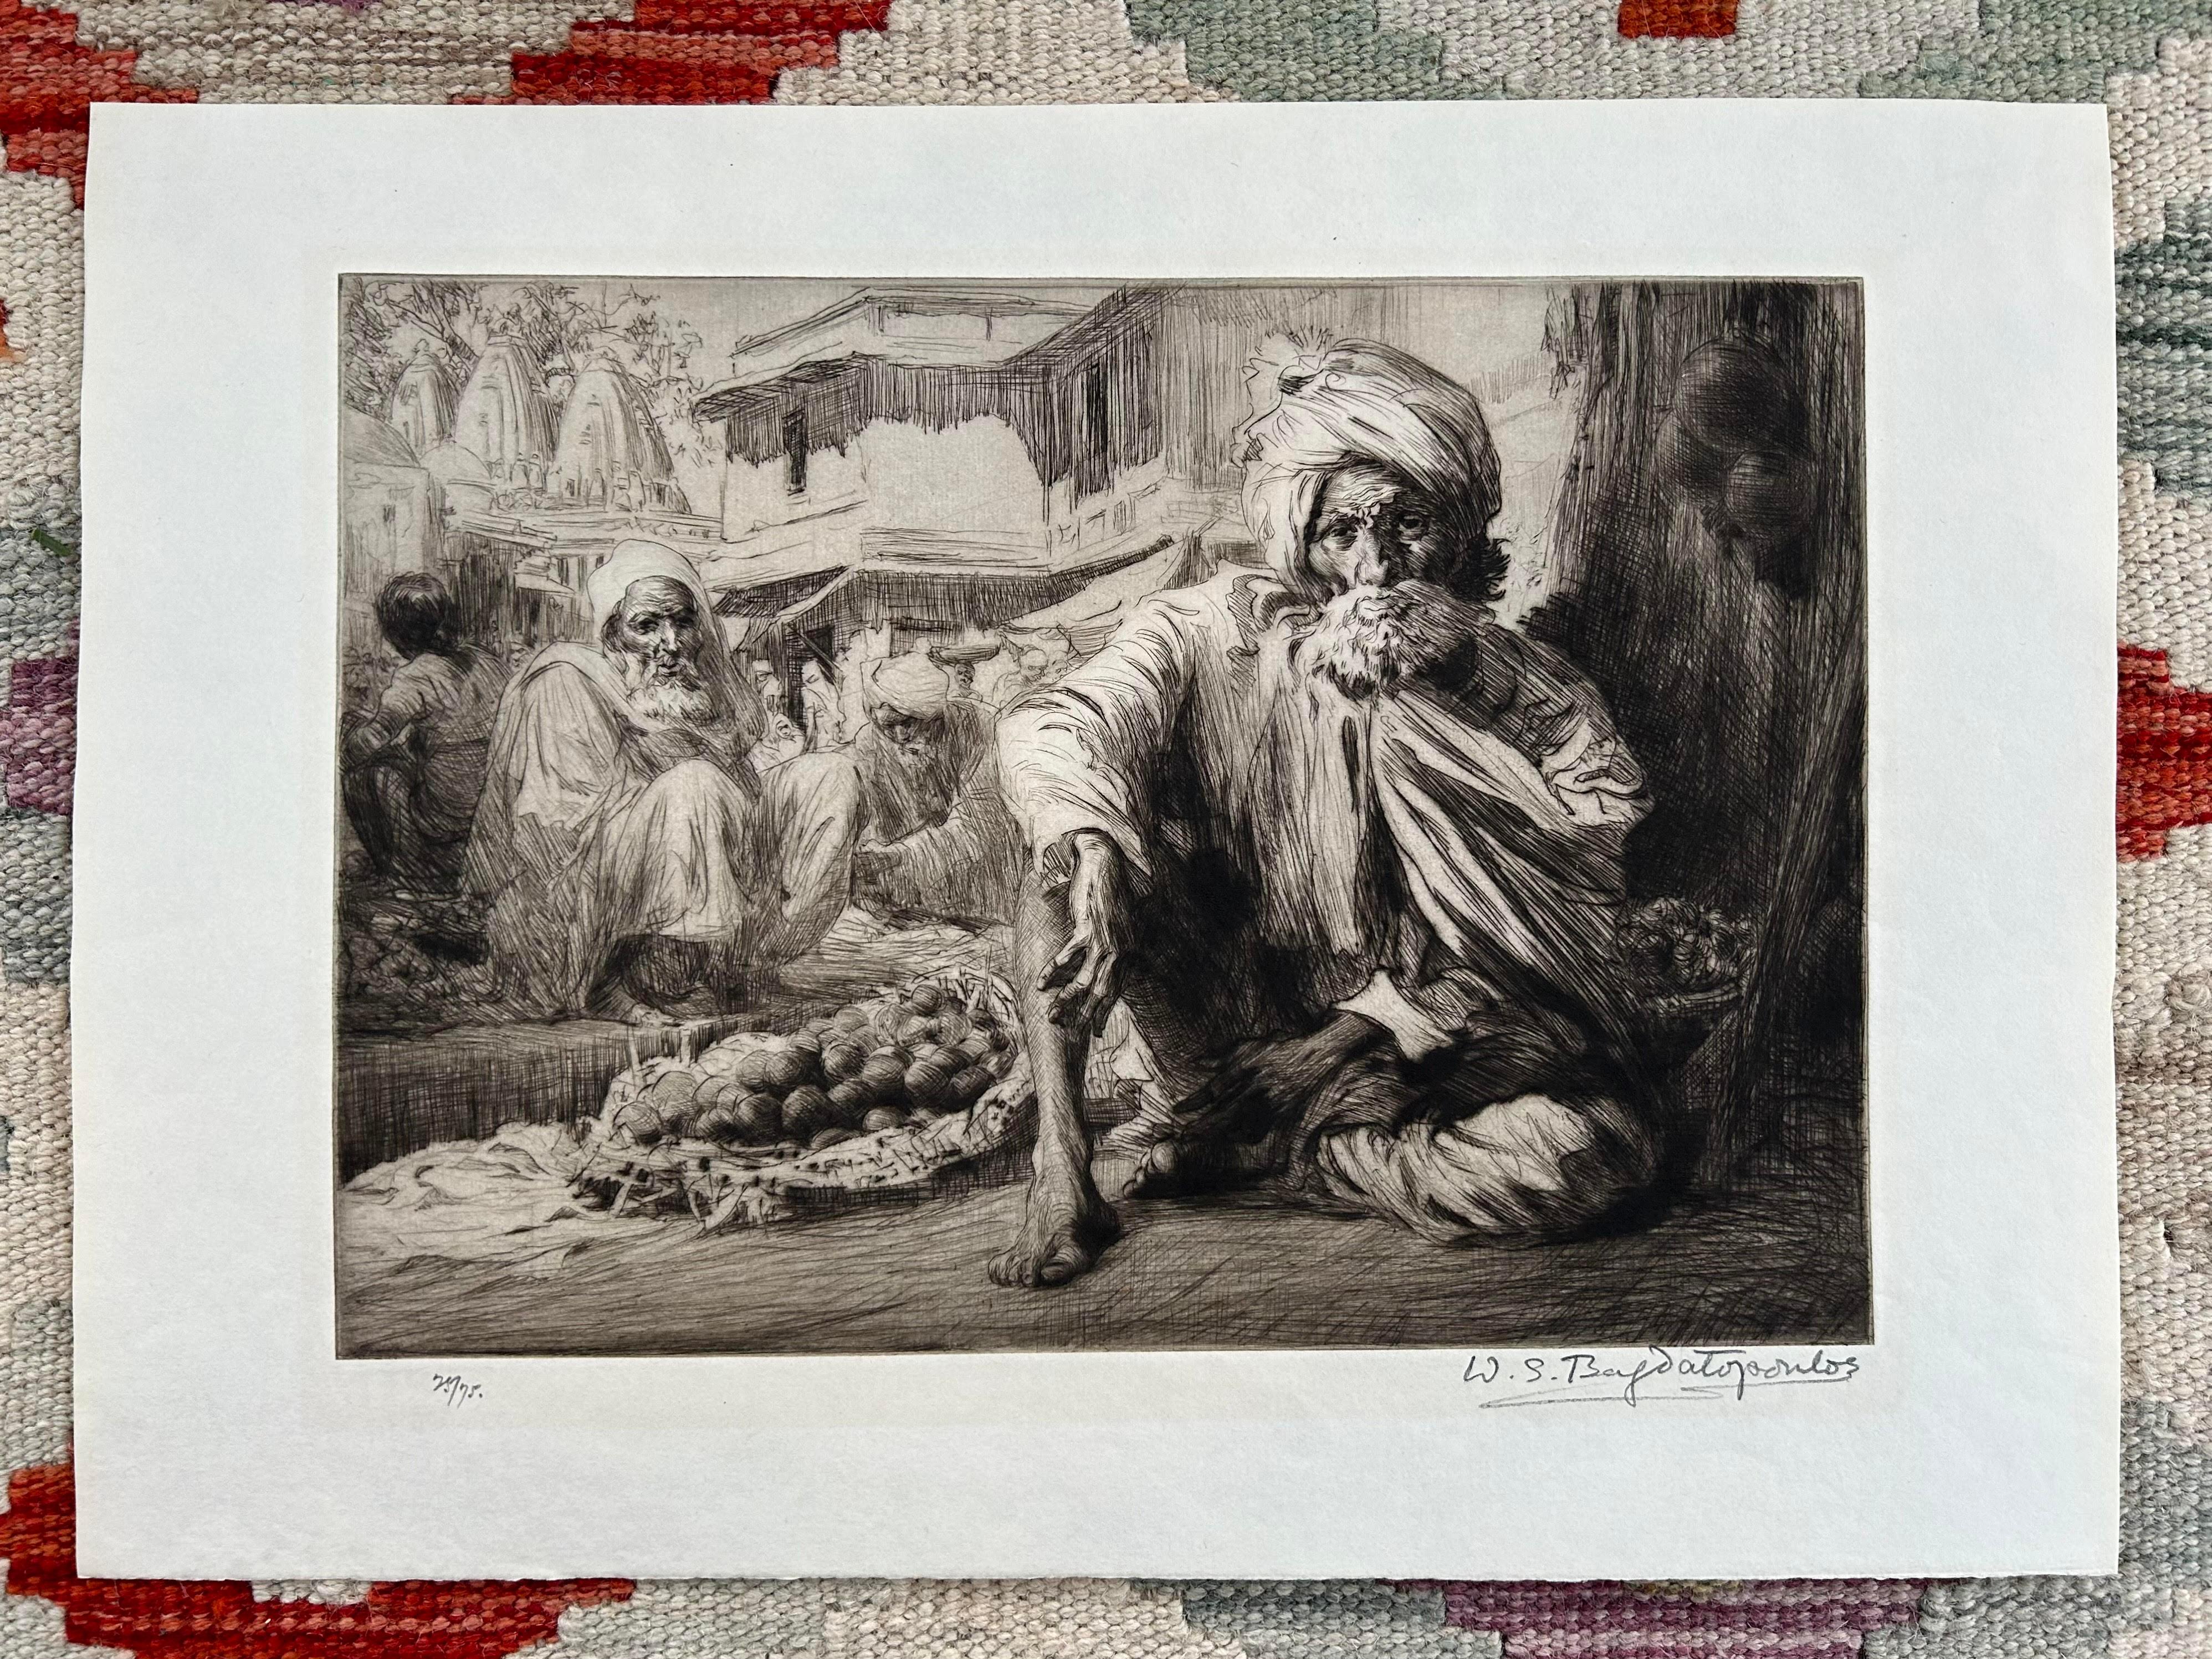 Seltene Auflage 25/75 Gravur in Bazaar Bijapur 1929 mit Bagdatopolus, Indien, im Bazaar Bijapur, seltene Auflage – Print von Unknown